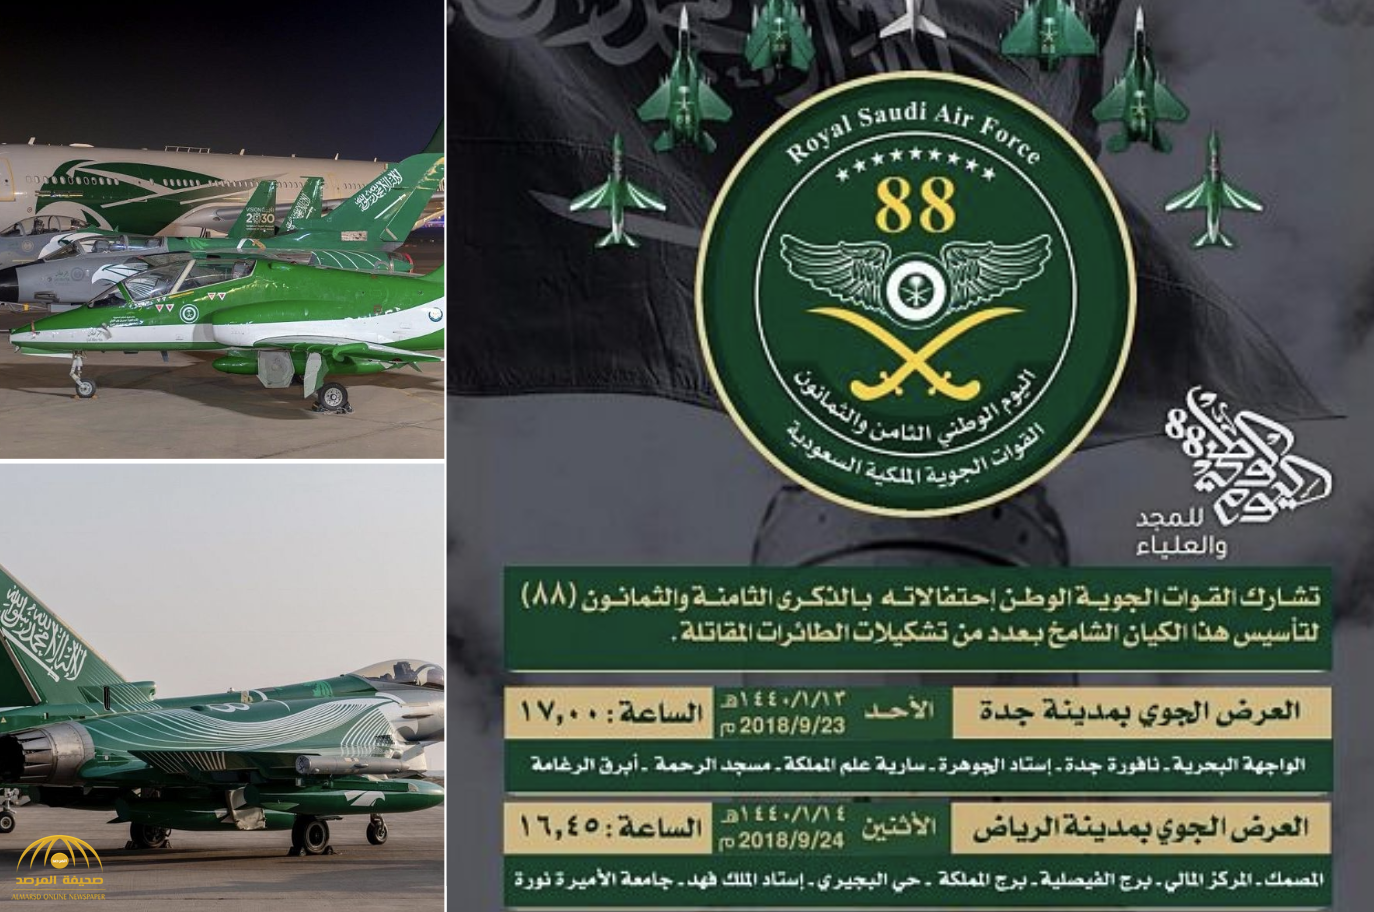 بالصور : السعودية تستعد للاحتفال باليوم الوطني 88 بعروض جوية في عدد من مناطق المملكة